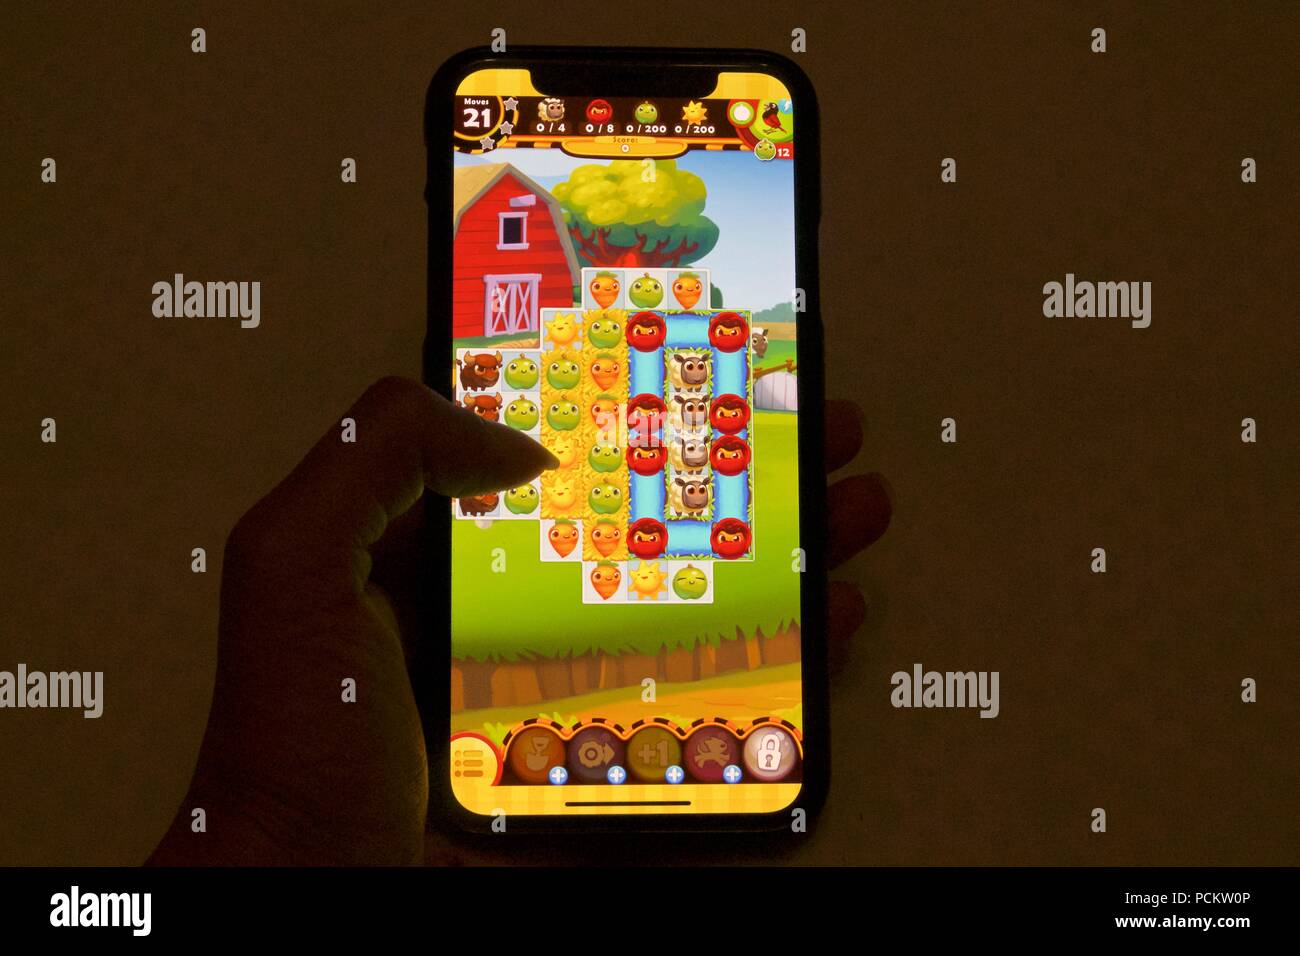 Agriturismo Saga degli Eroi, una fattoria themed match 3 puzzle game realizzato da re, su un iPhone x Foto Stock